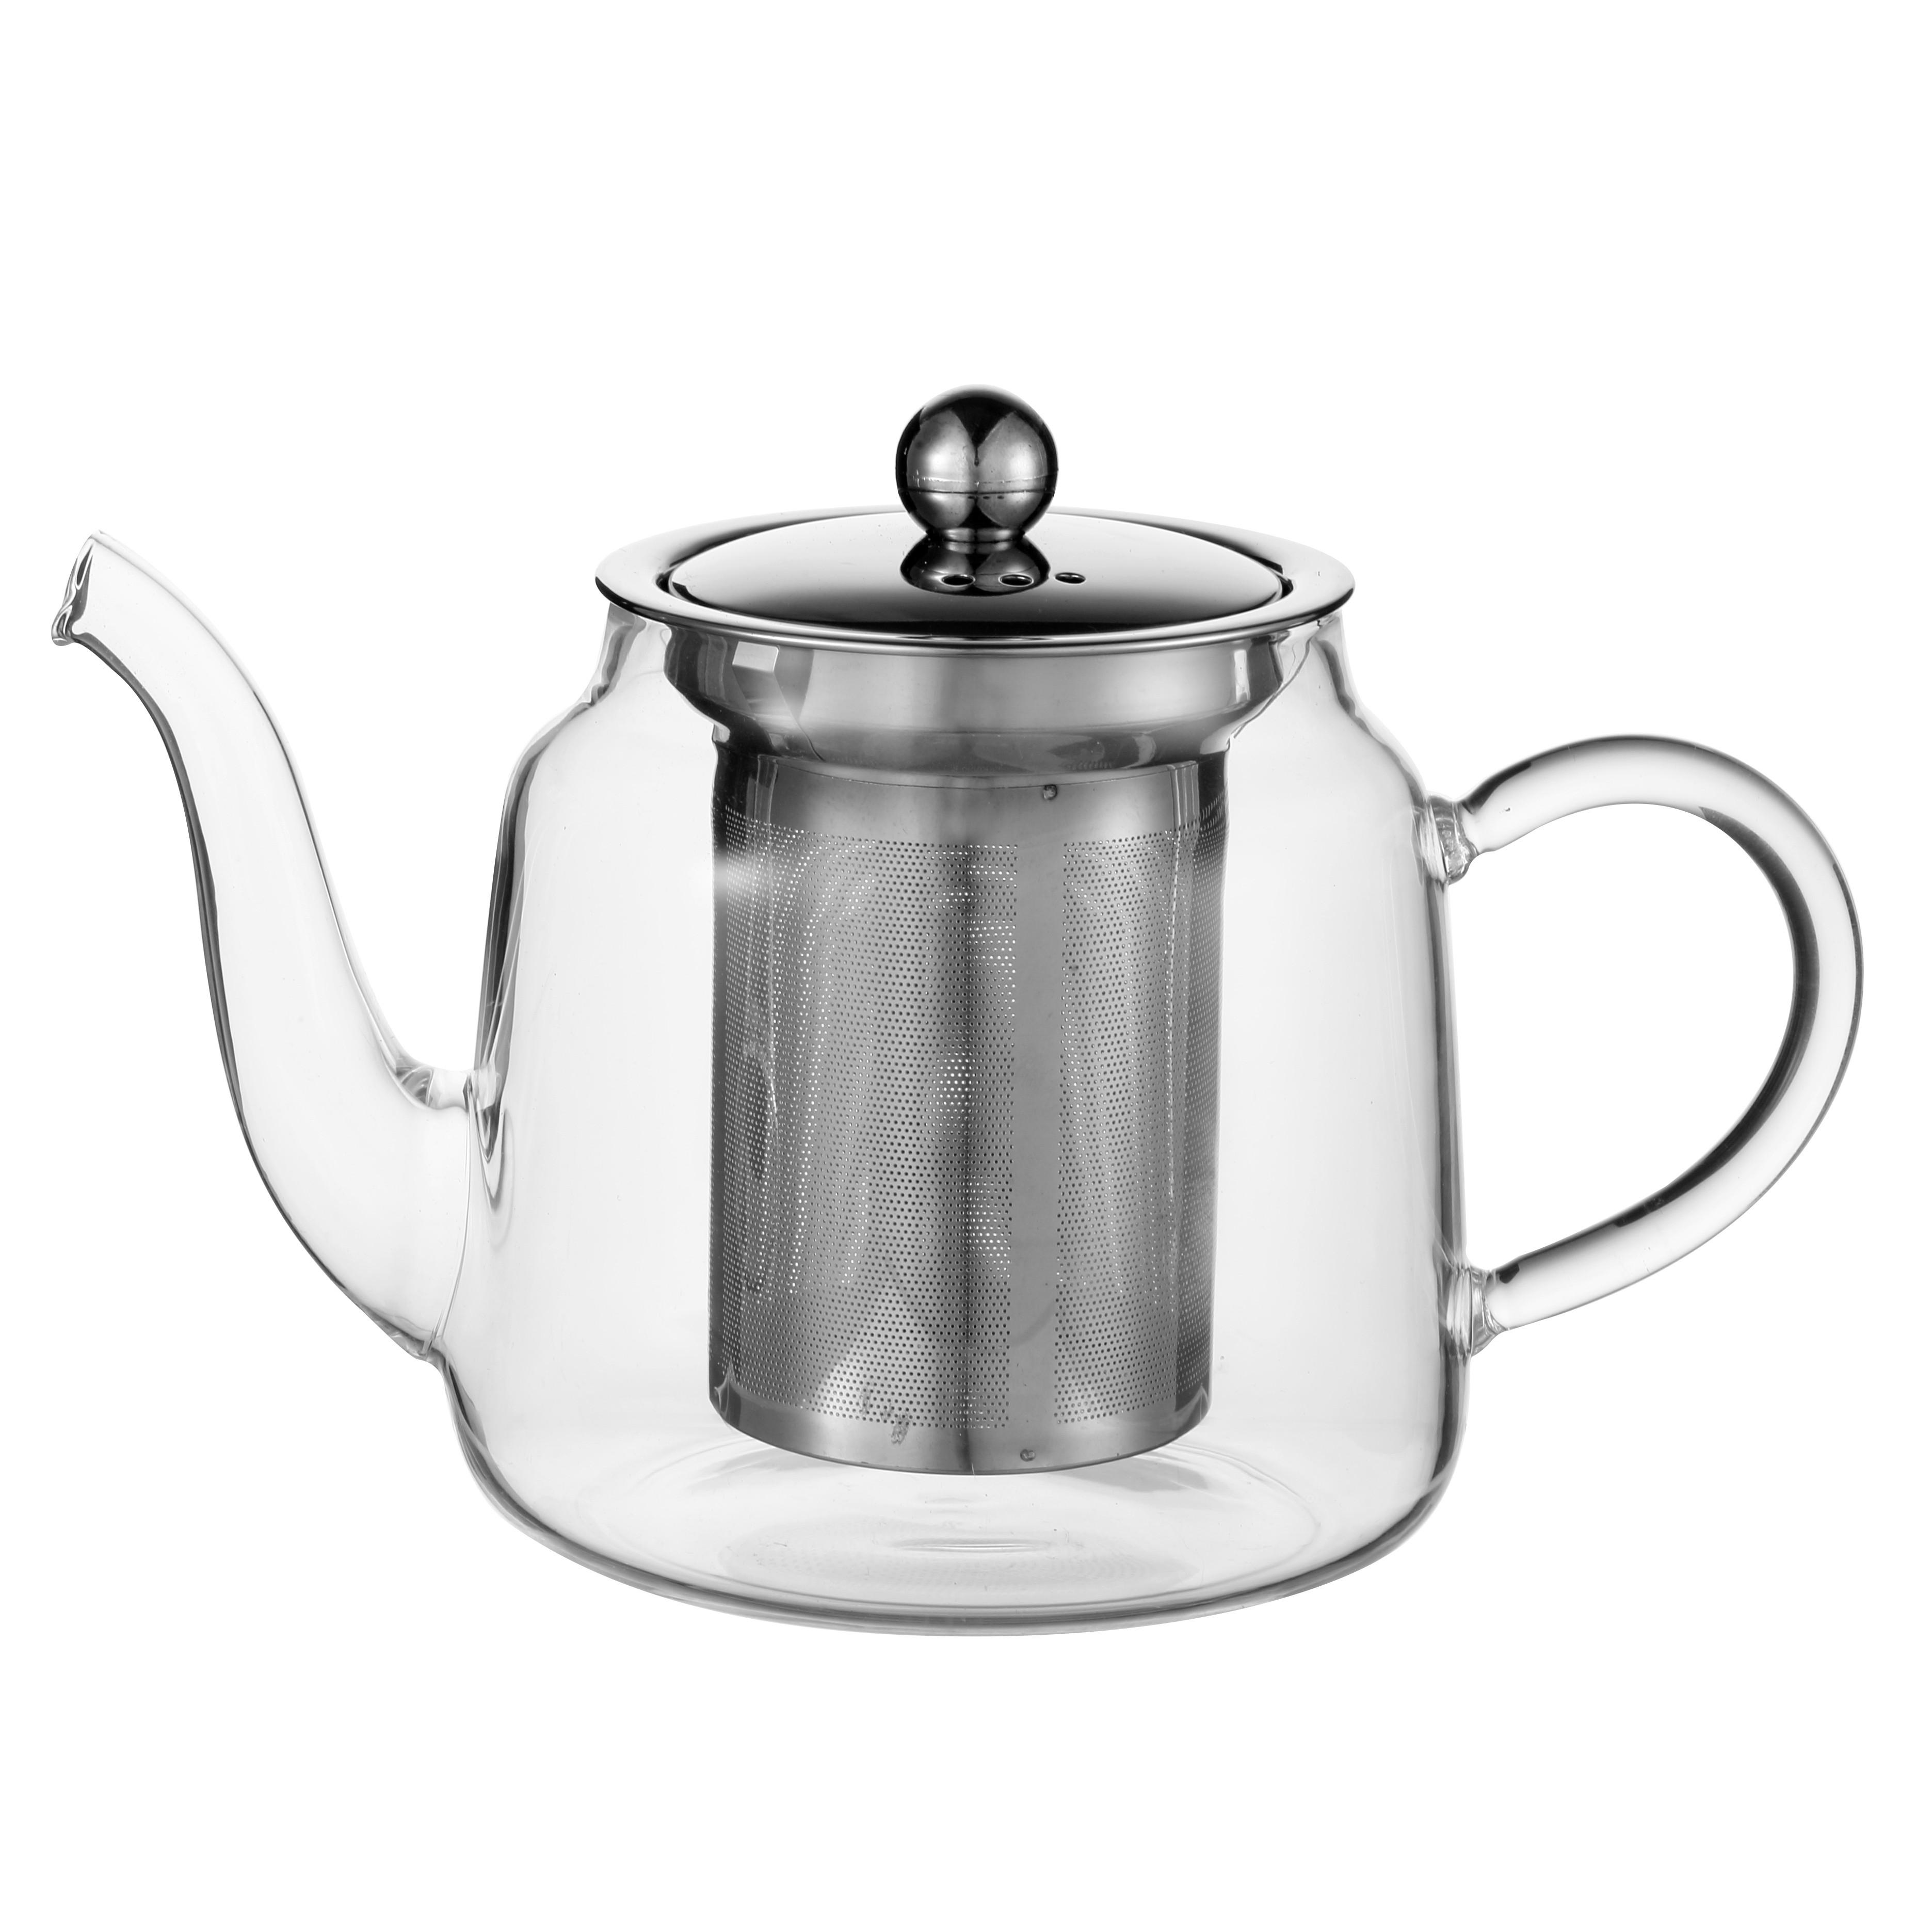 Vrč Za Čaj Tea Fusion - barve nerjavečega jekla/prozorno, Moderno, kovina/steklo (19,5/11,5/14,5cm) - Premium Living